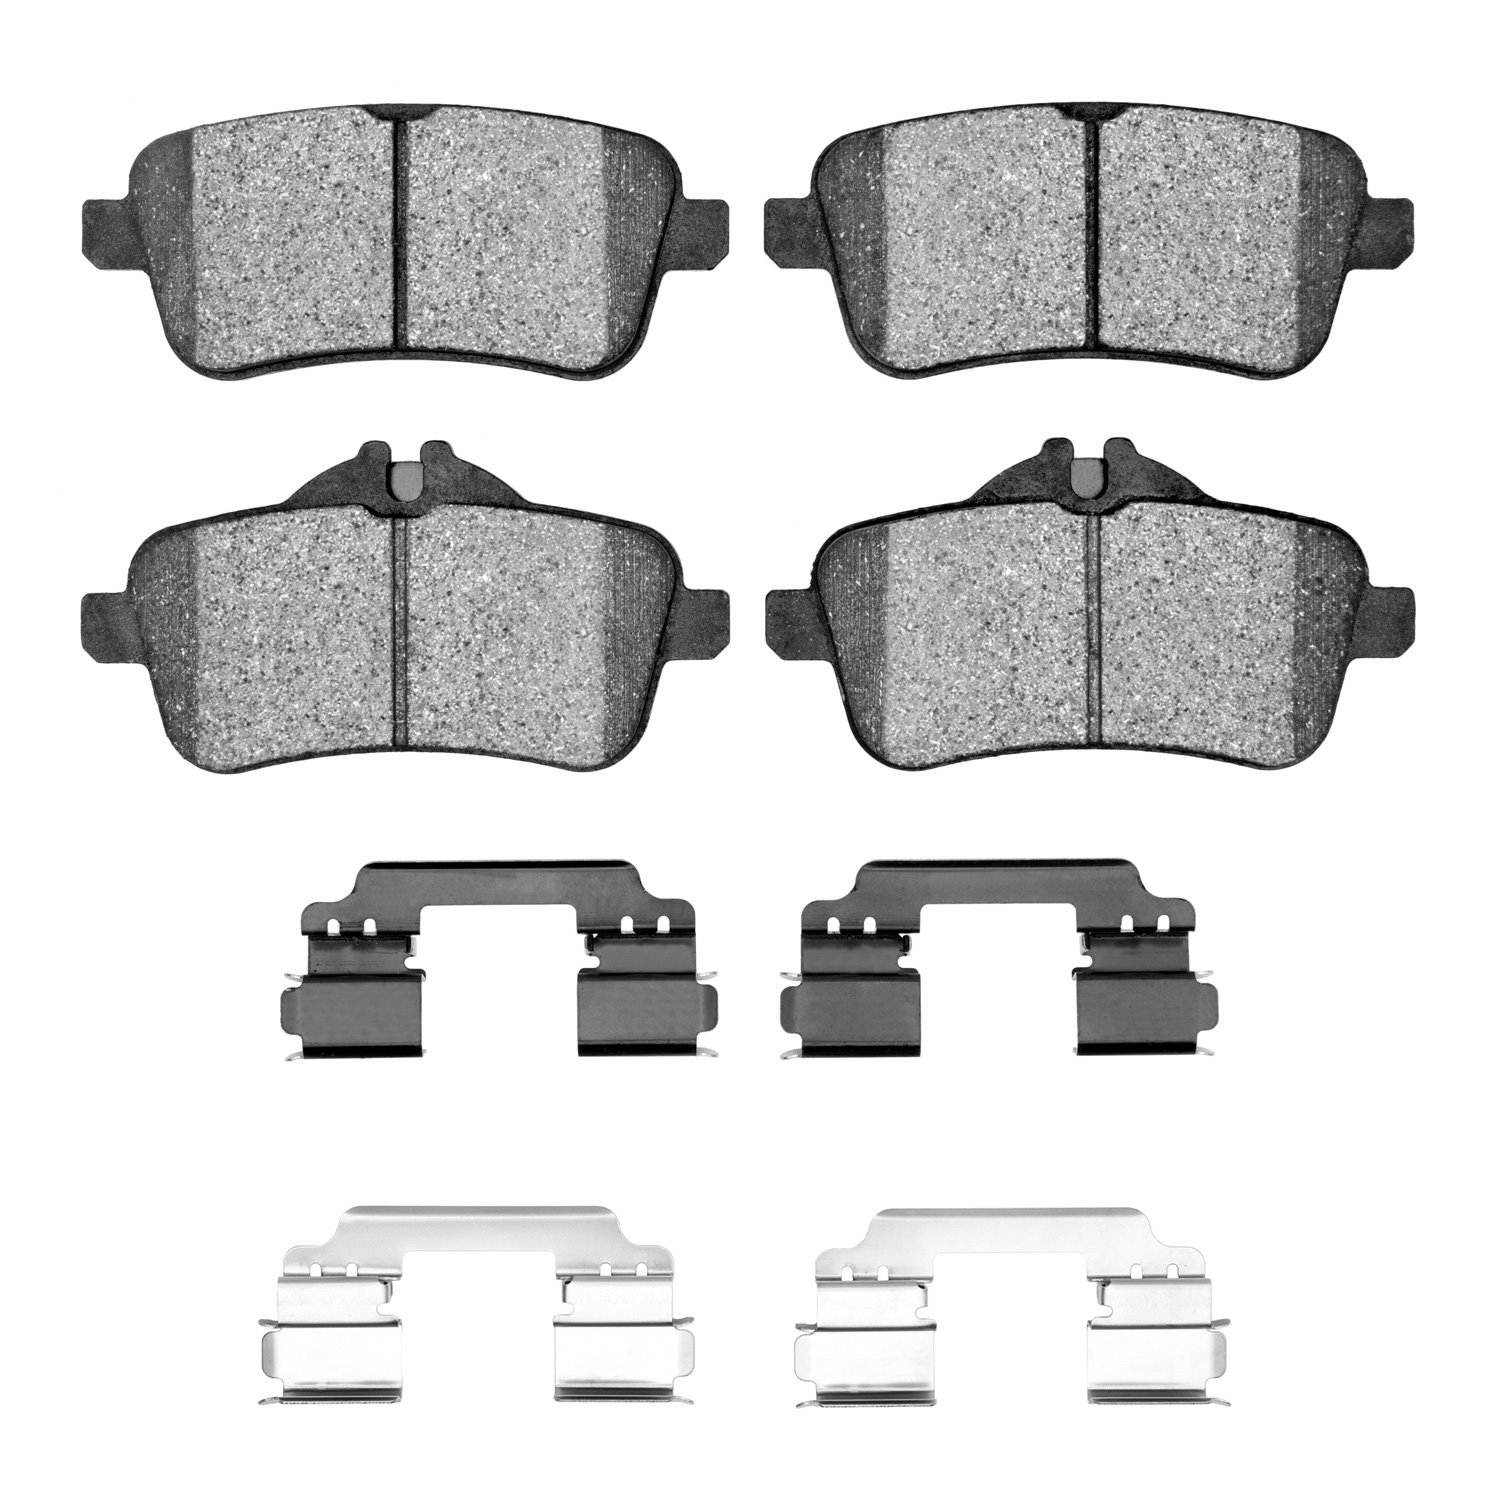 1310-1630-23 3000-Series Ceramic Brake Pads & Hardware Kit, 2012-2019 Mercedes-Benz, Position: Rear